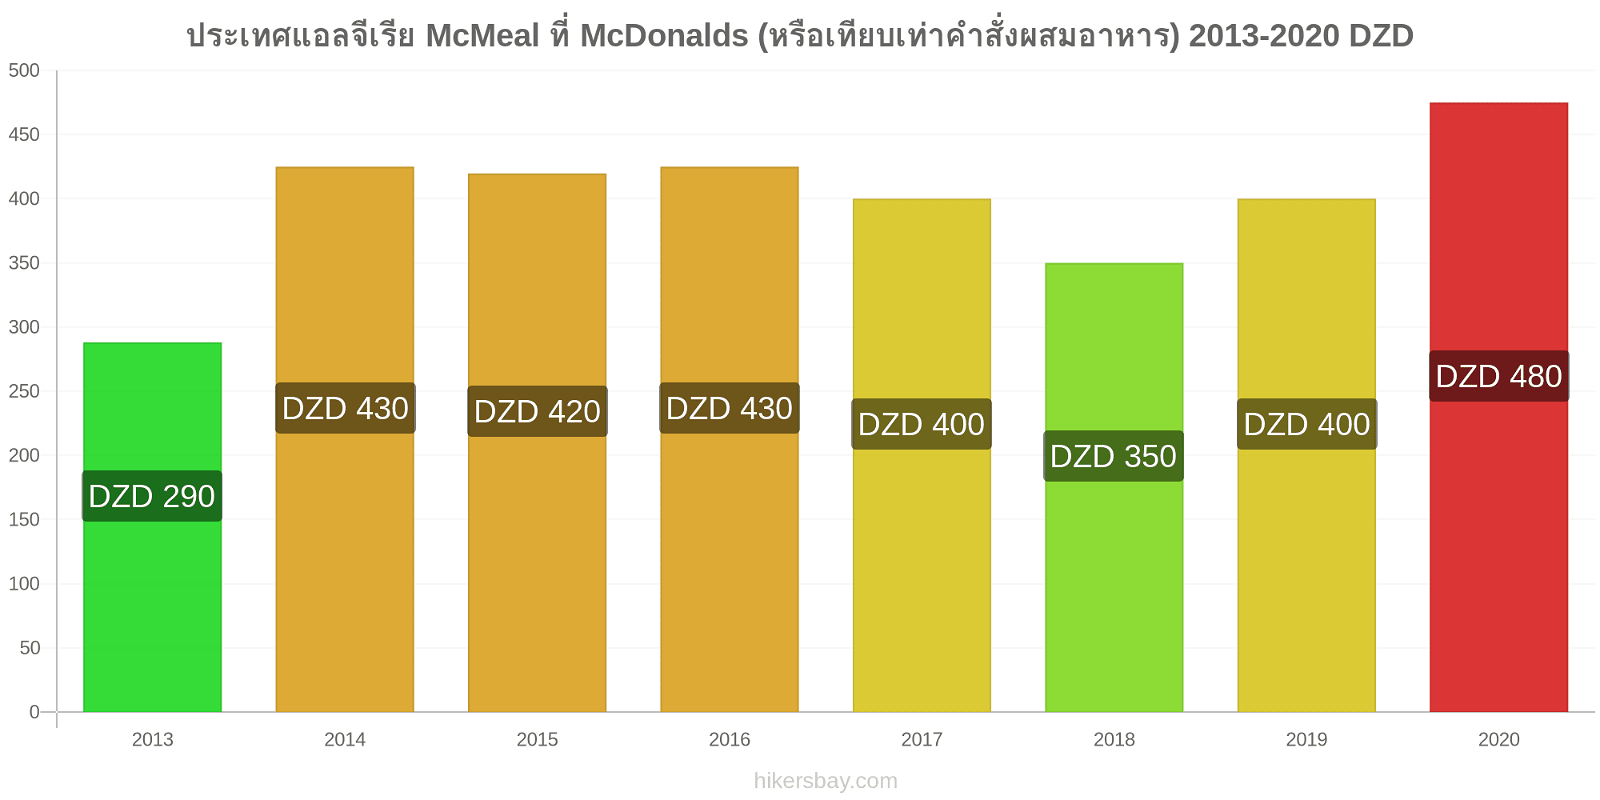 ประเทศแอลจีเรีย การเปลี่ยนแปลงราคา McMeal ที่ McDonalds (หรือเทียบเท่าคำสั่งผสมอาหาร) hikersbay.com